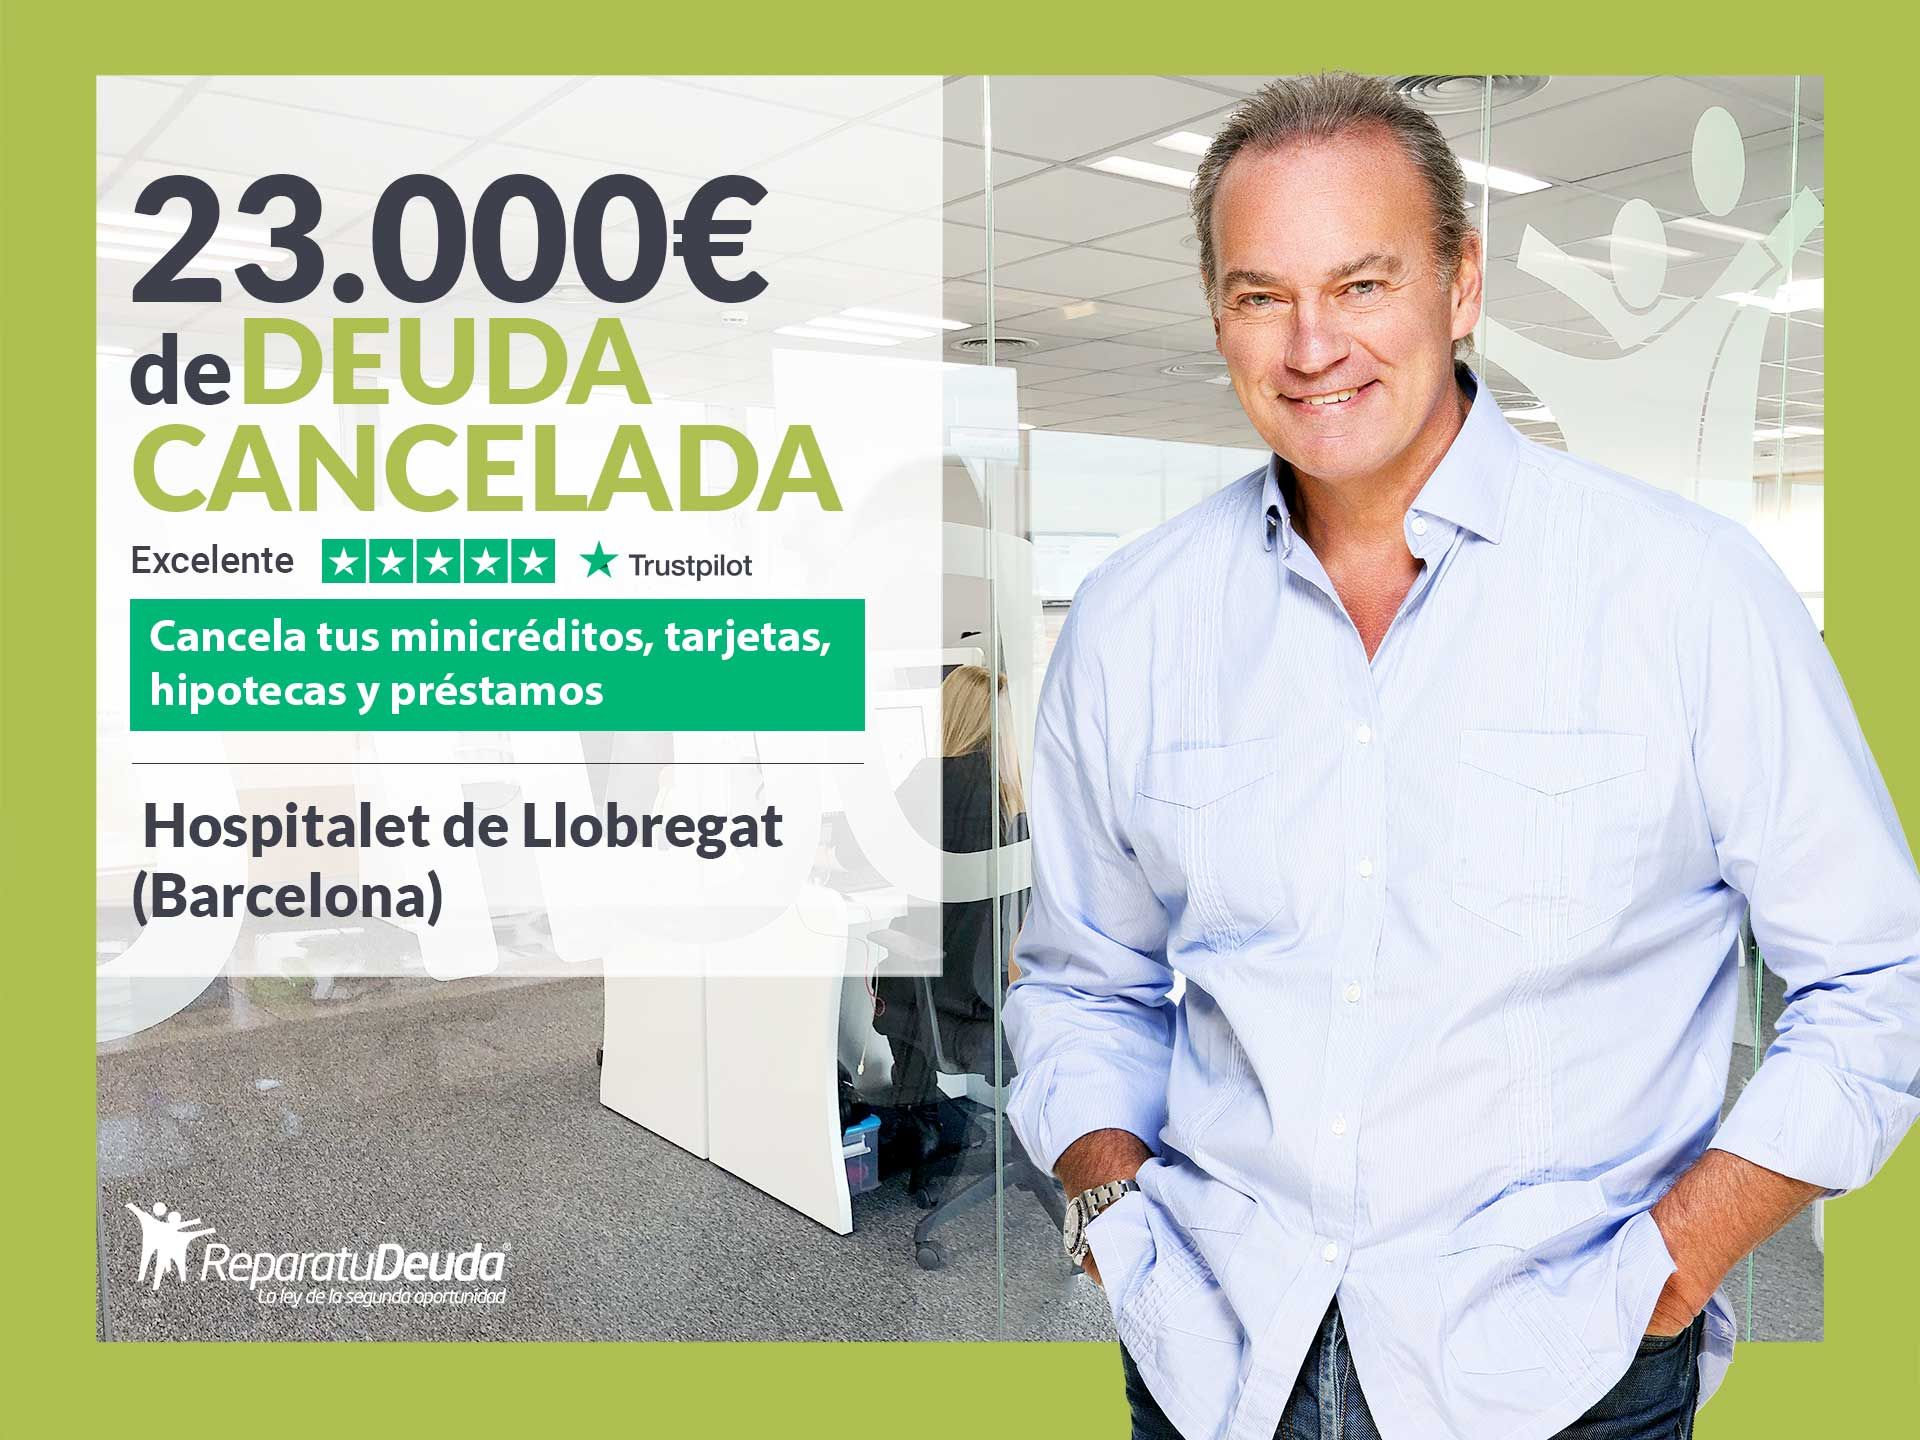 Repara tu Deuda cancela 23.000? en Hospitalet de Llobregat (Barcelona) con la Ley de Segunda Oportunidad